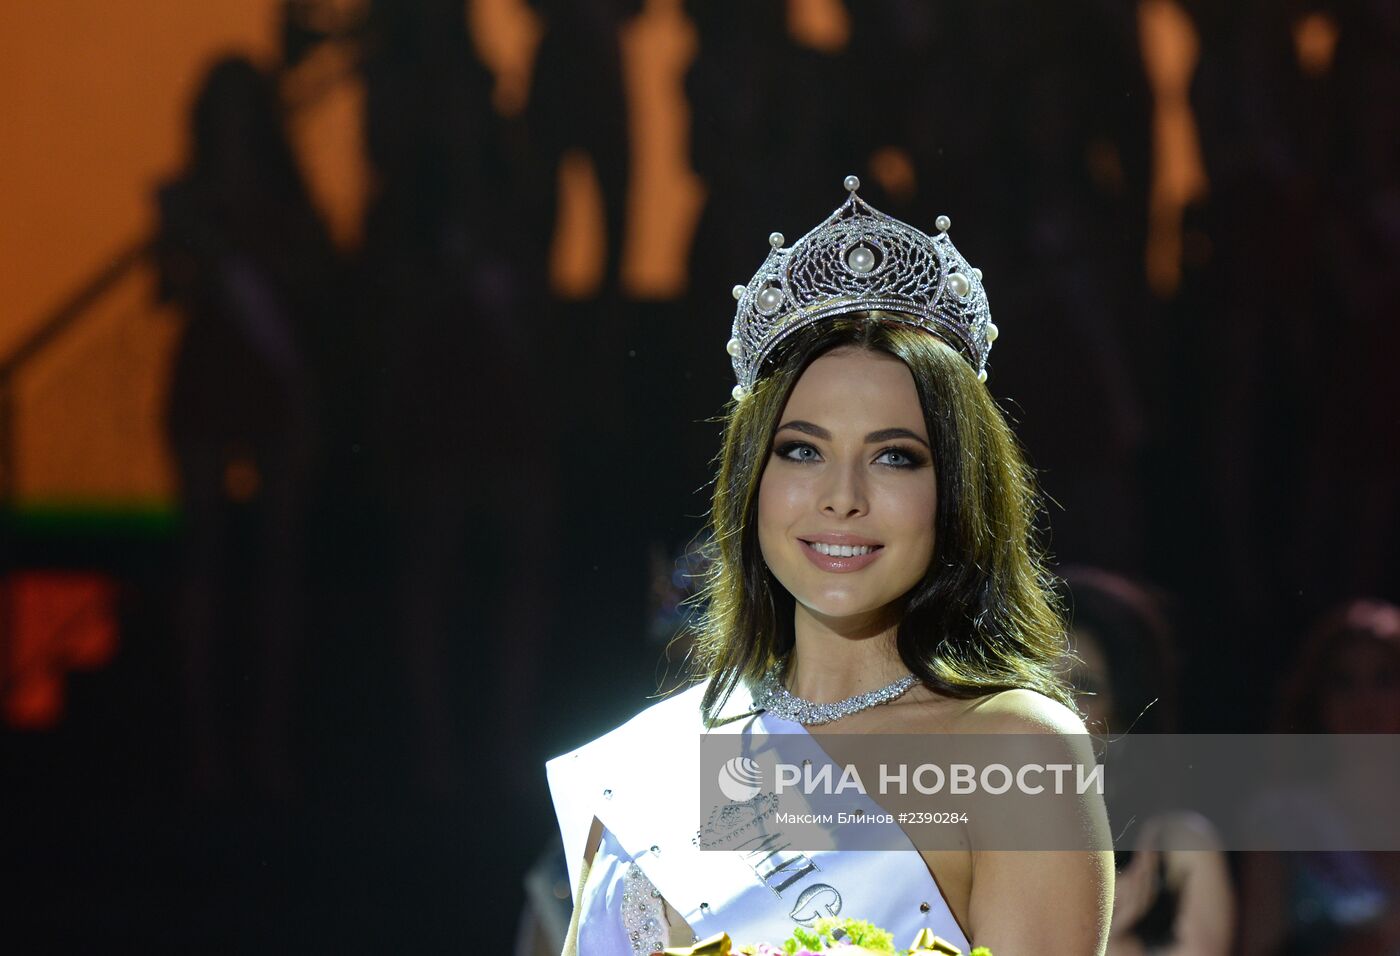 Финал Национального конкурса "Мисс Россия 2014"